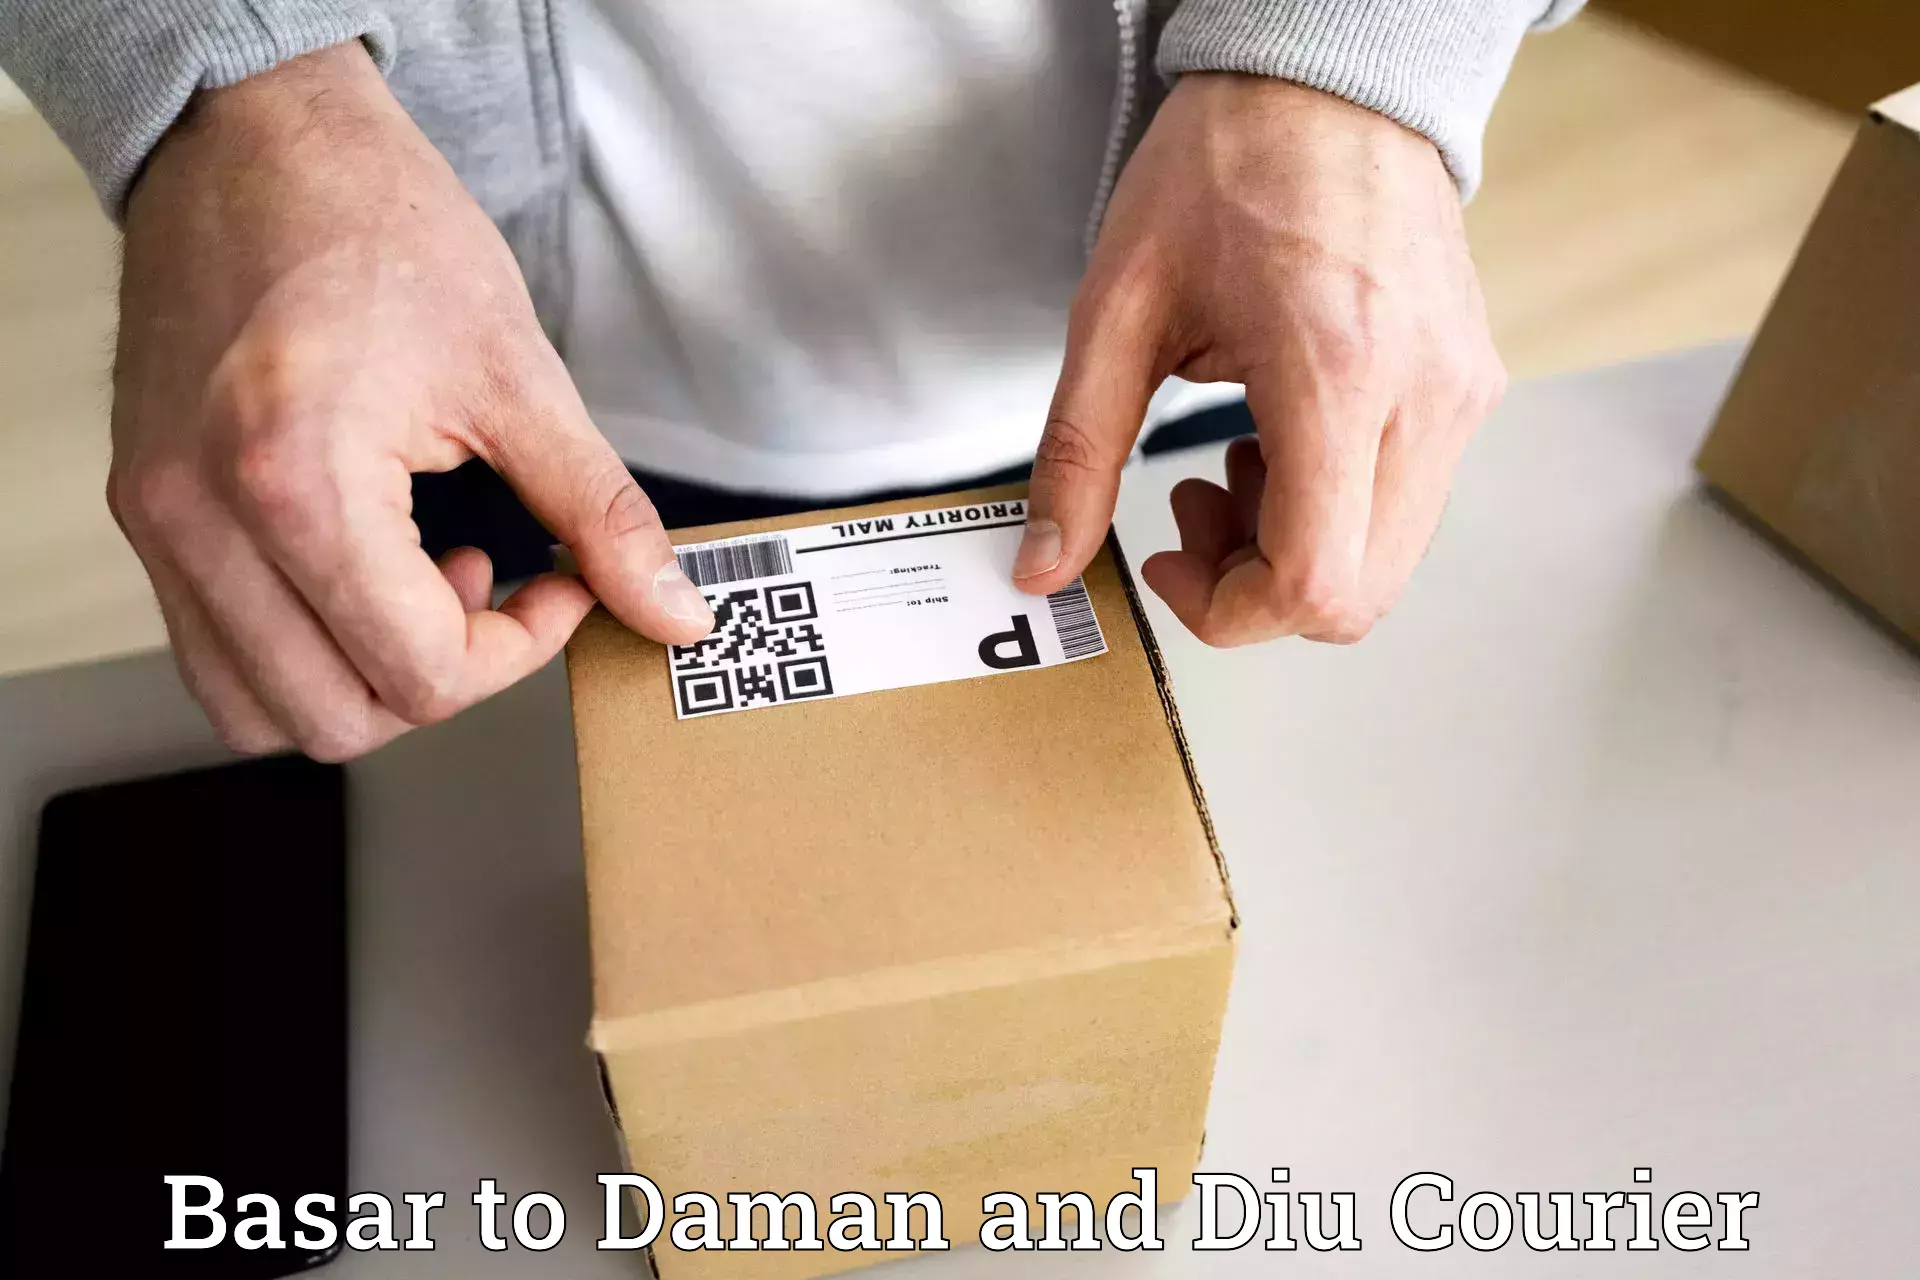 Express logistics providers Basar to Daman and Diu